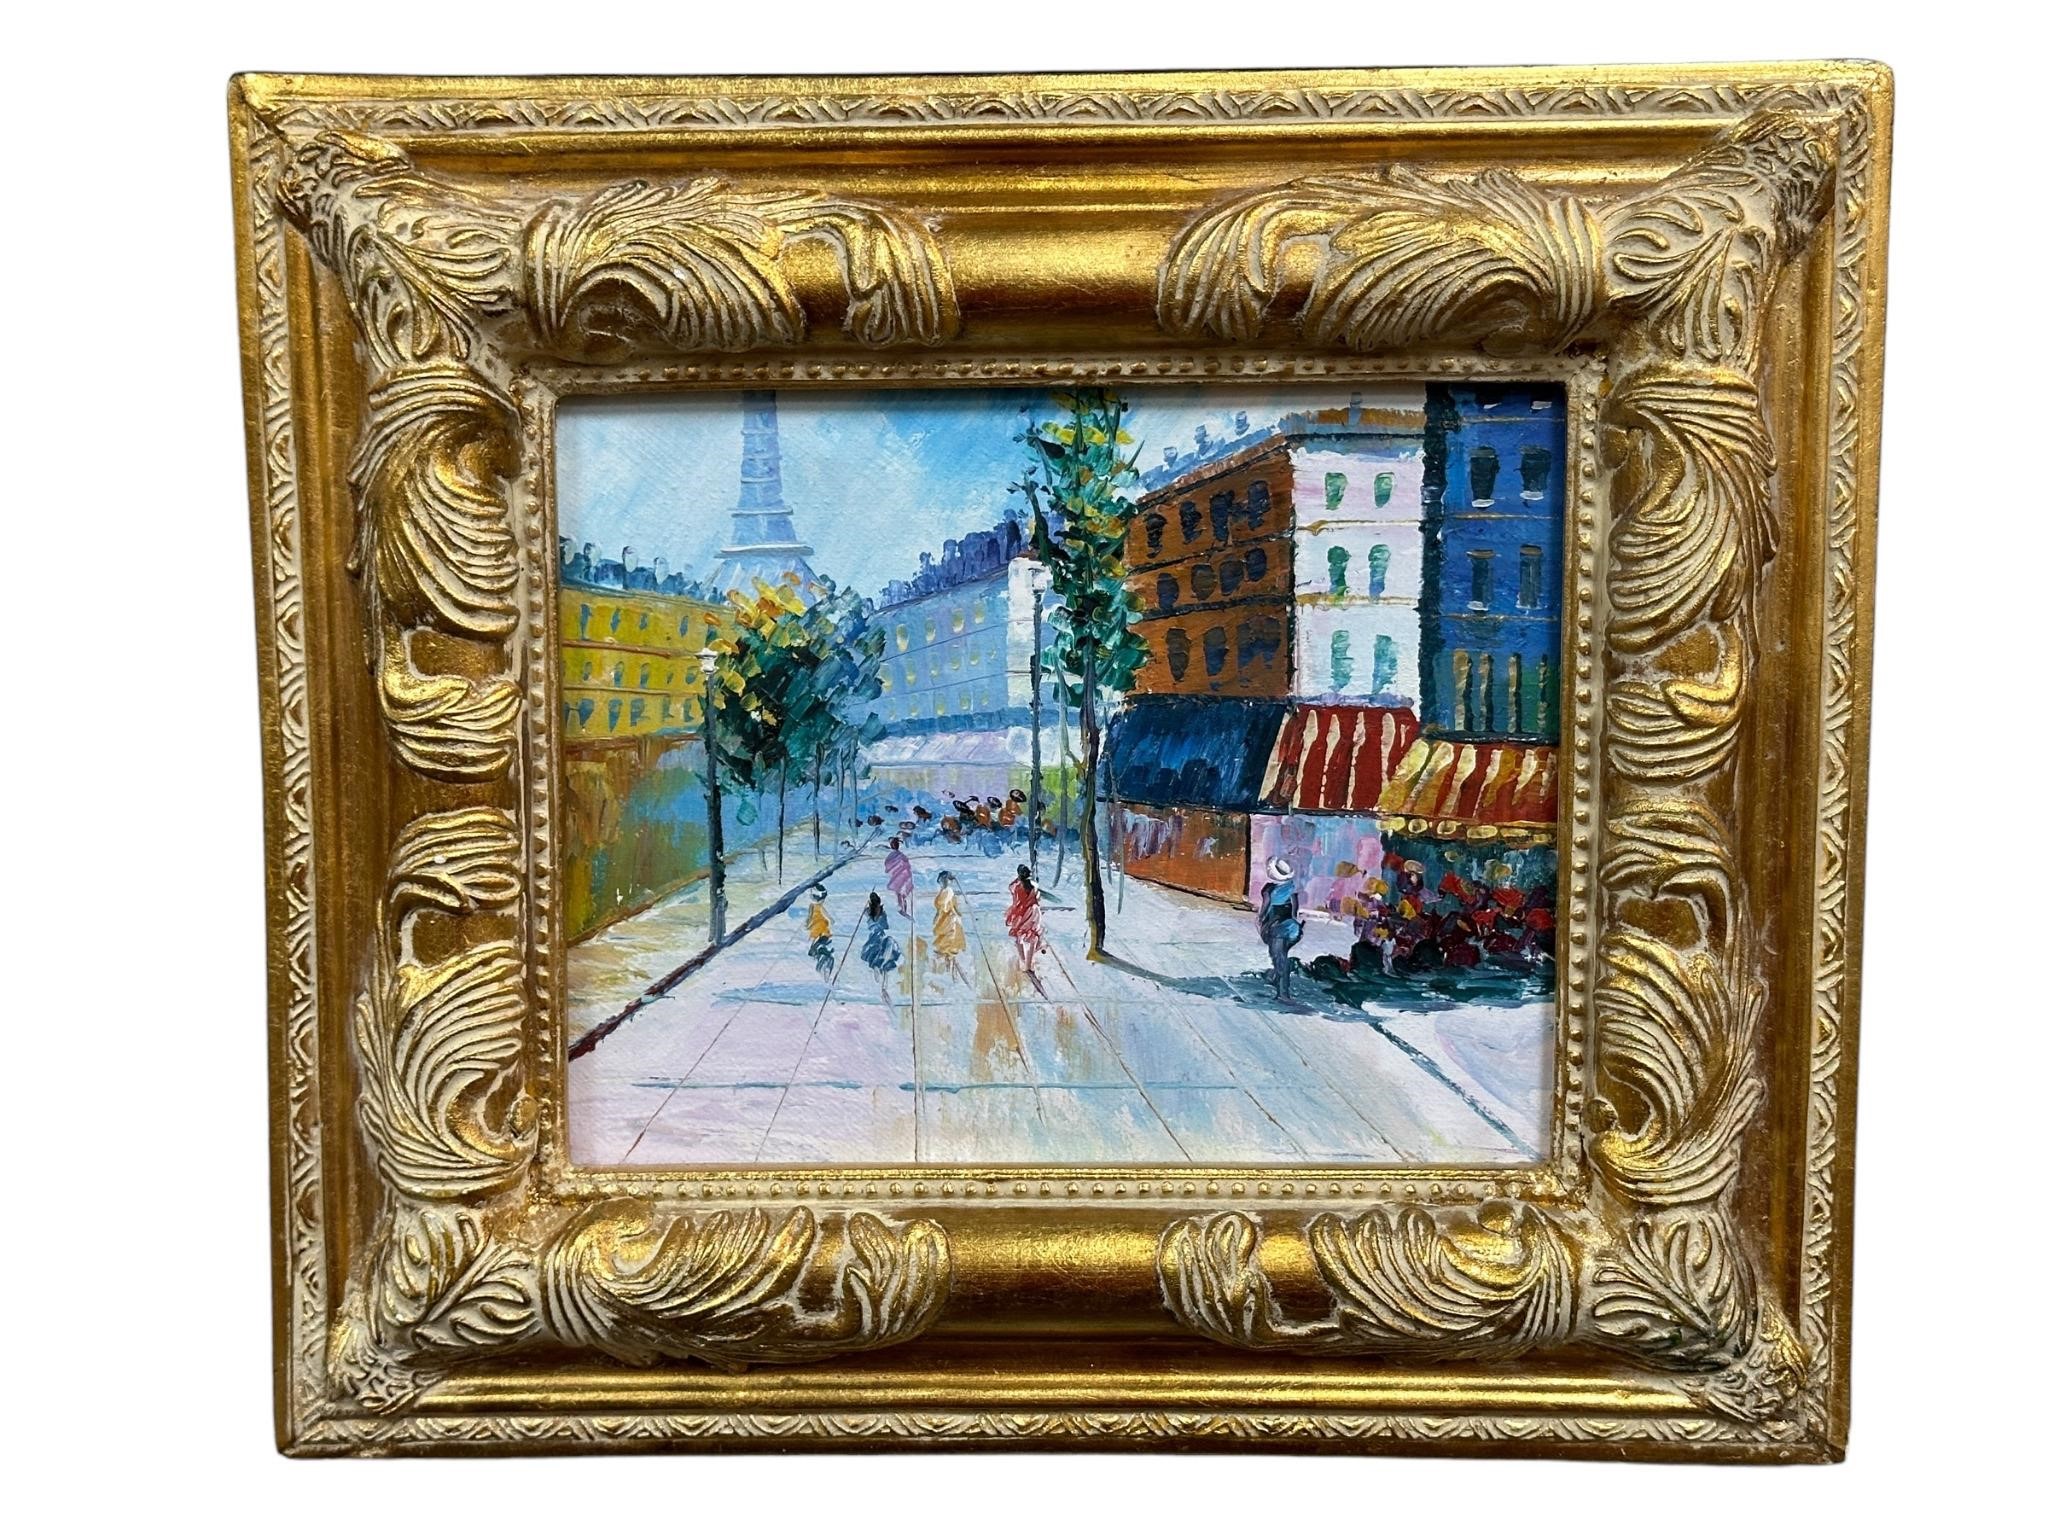 Framed Oil on Canvas Street Scene Painting